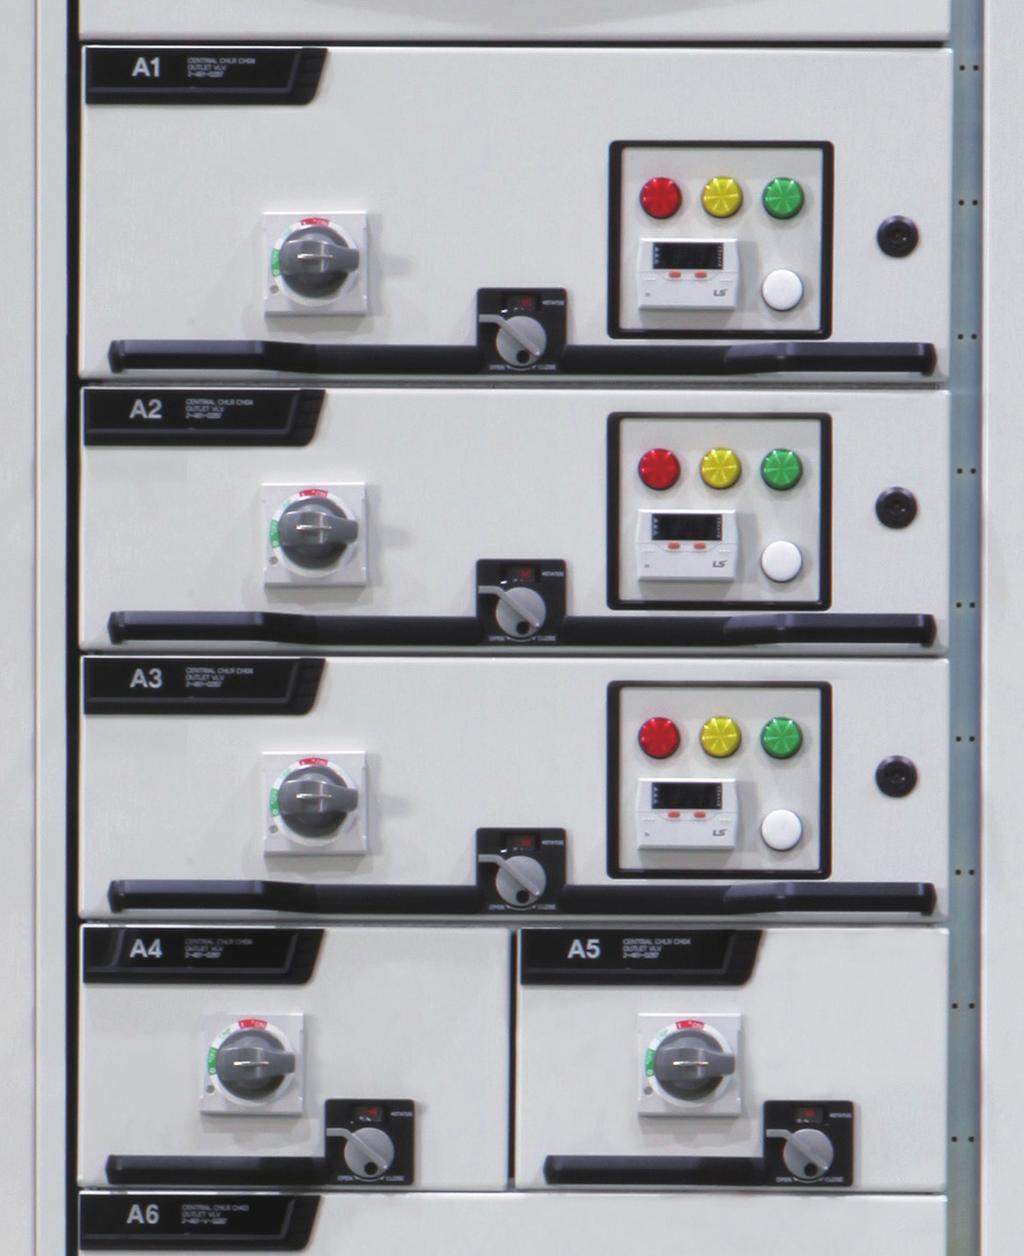 조작및표시전면판 MCCB 조작핸들 (ON 또는 OFF 위치에서 Pad-Lock 가능 ) 위치잠금장치 조작및표시판 도어핸들 Position Handle Position Mechanical Status Electrical Status ½, 1 Unit Status Module